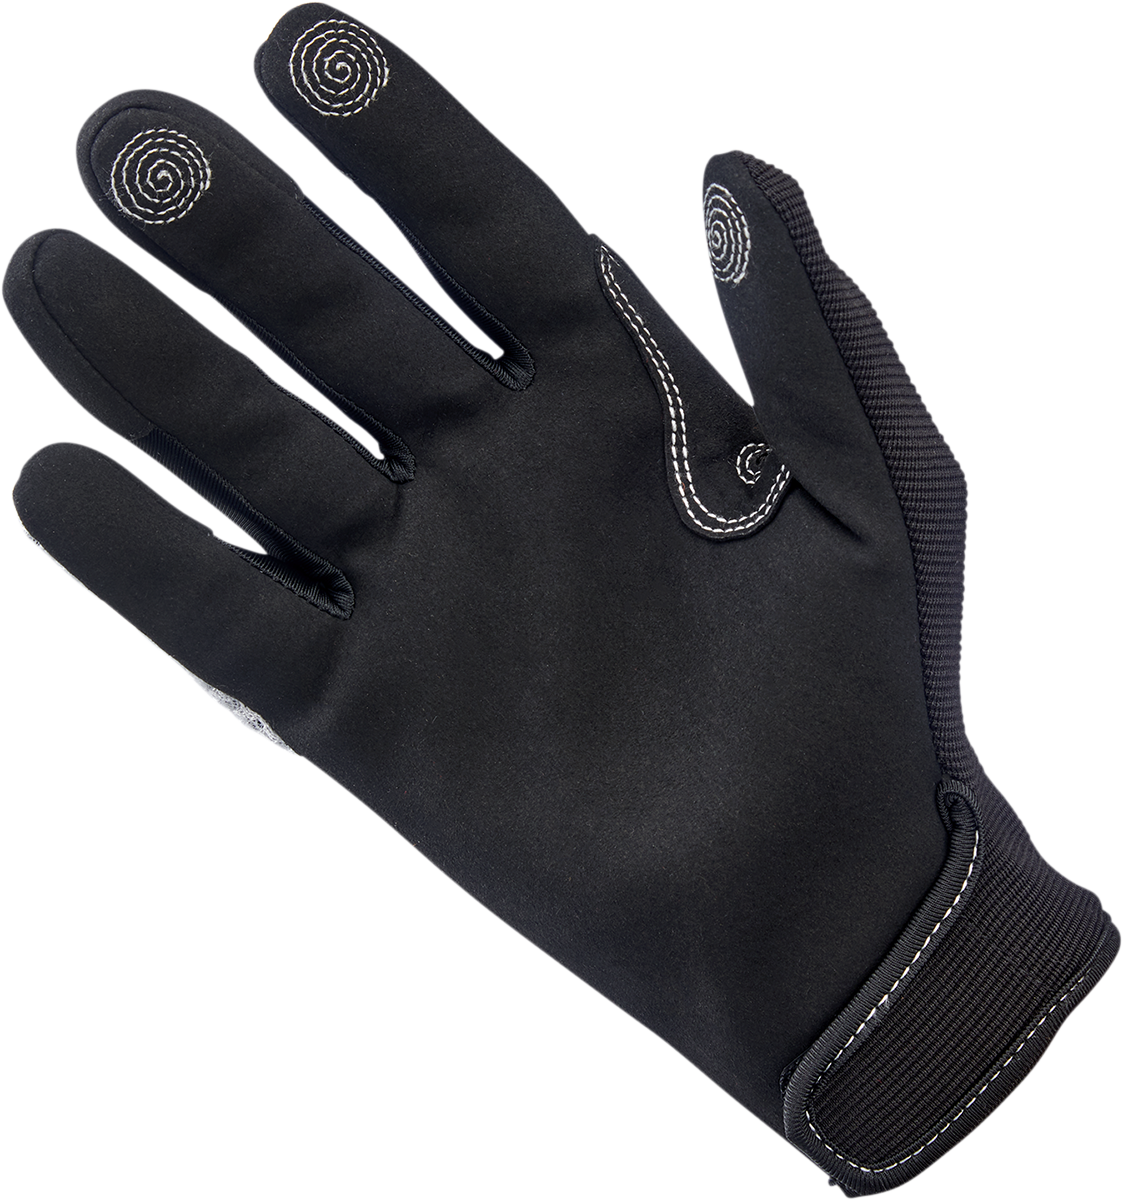 BILTWELL Anza Gloves - White - Medium 1507-0401-003